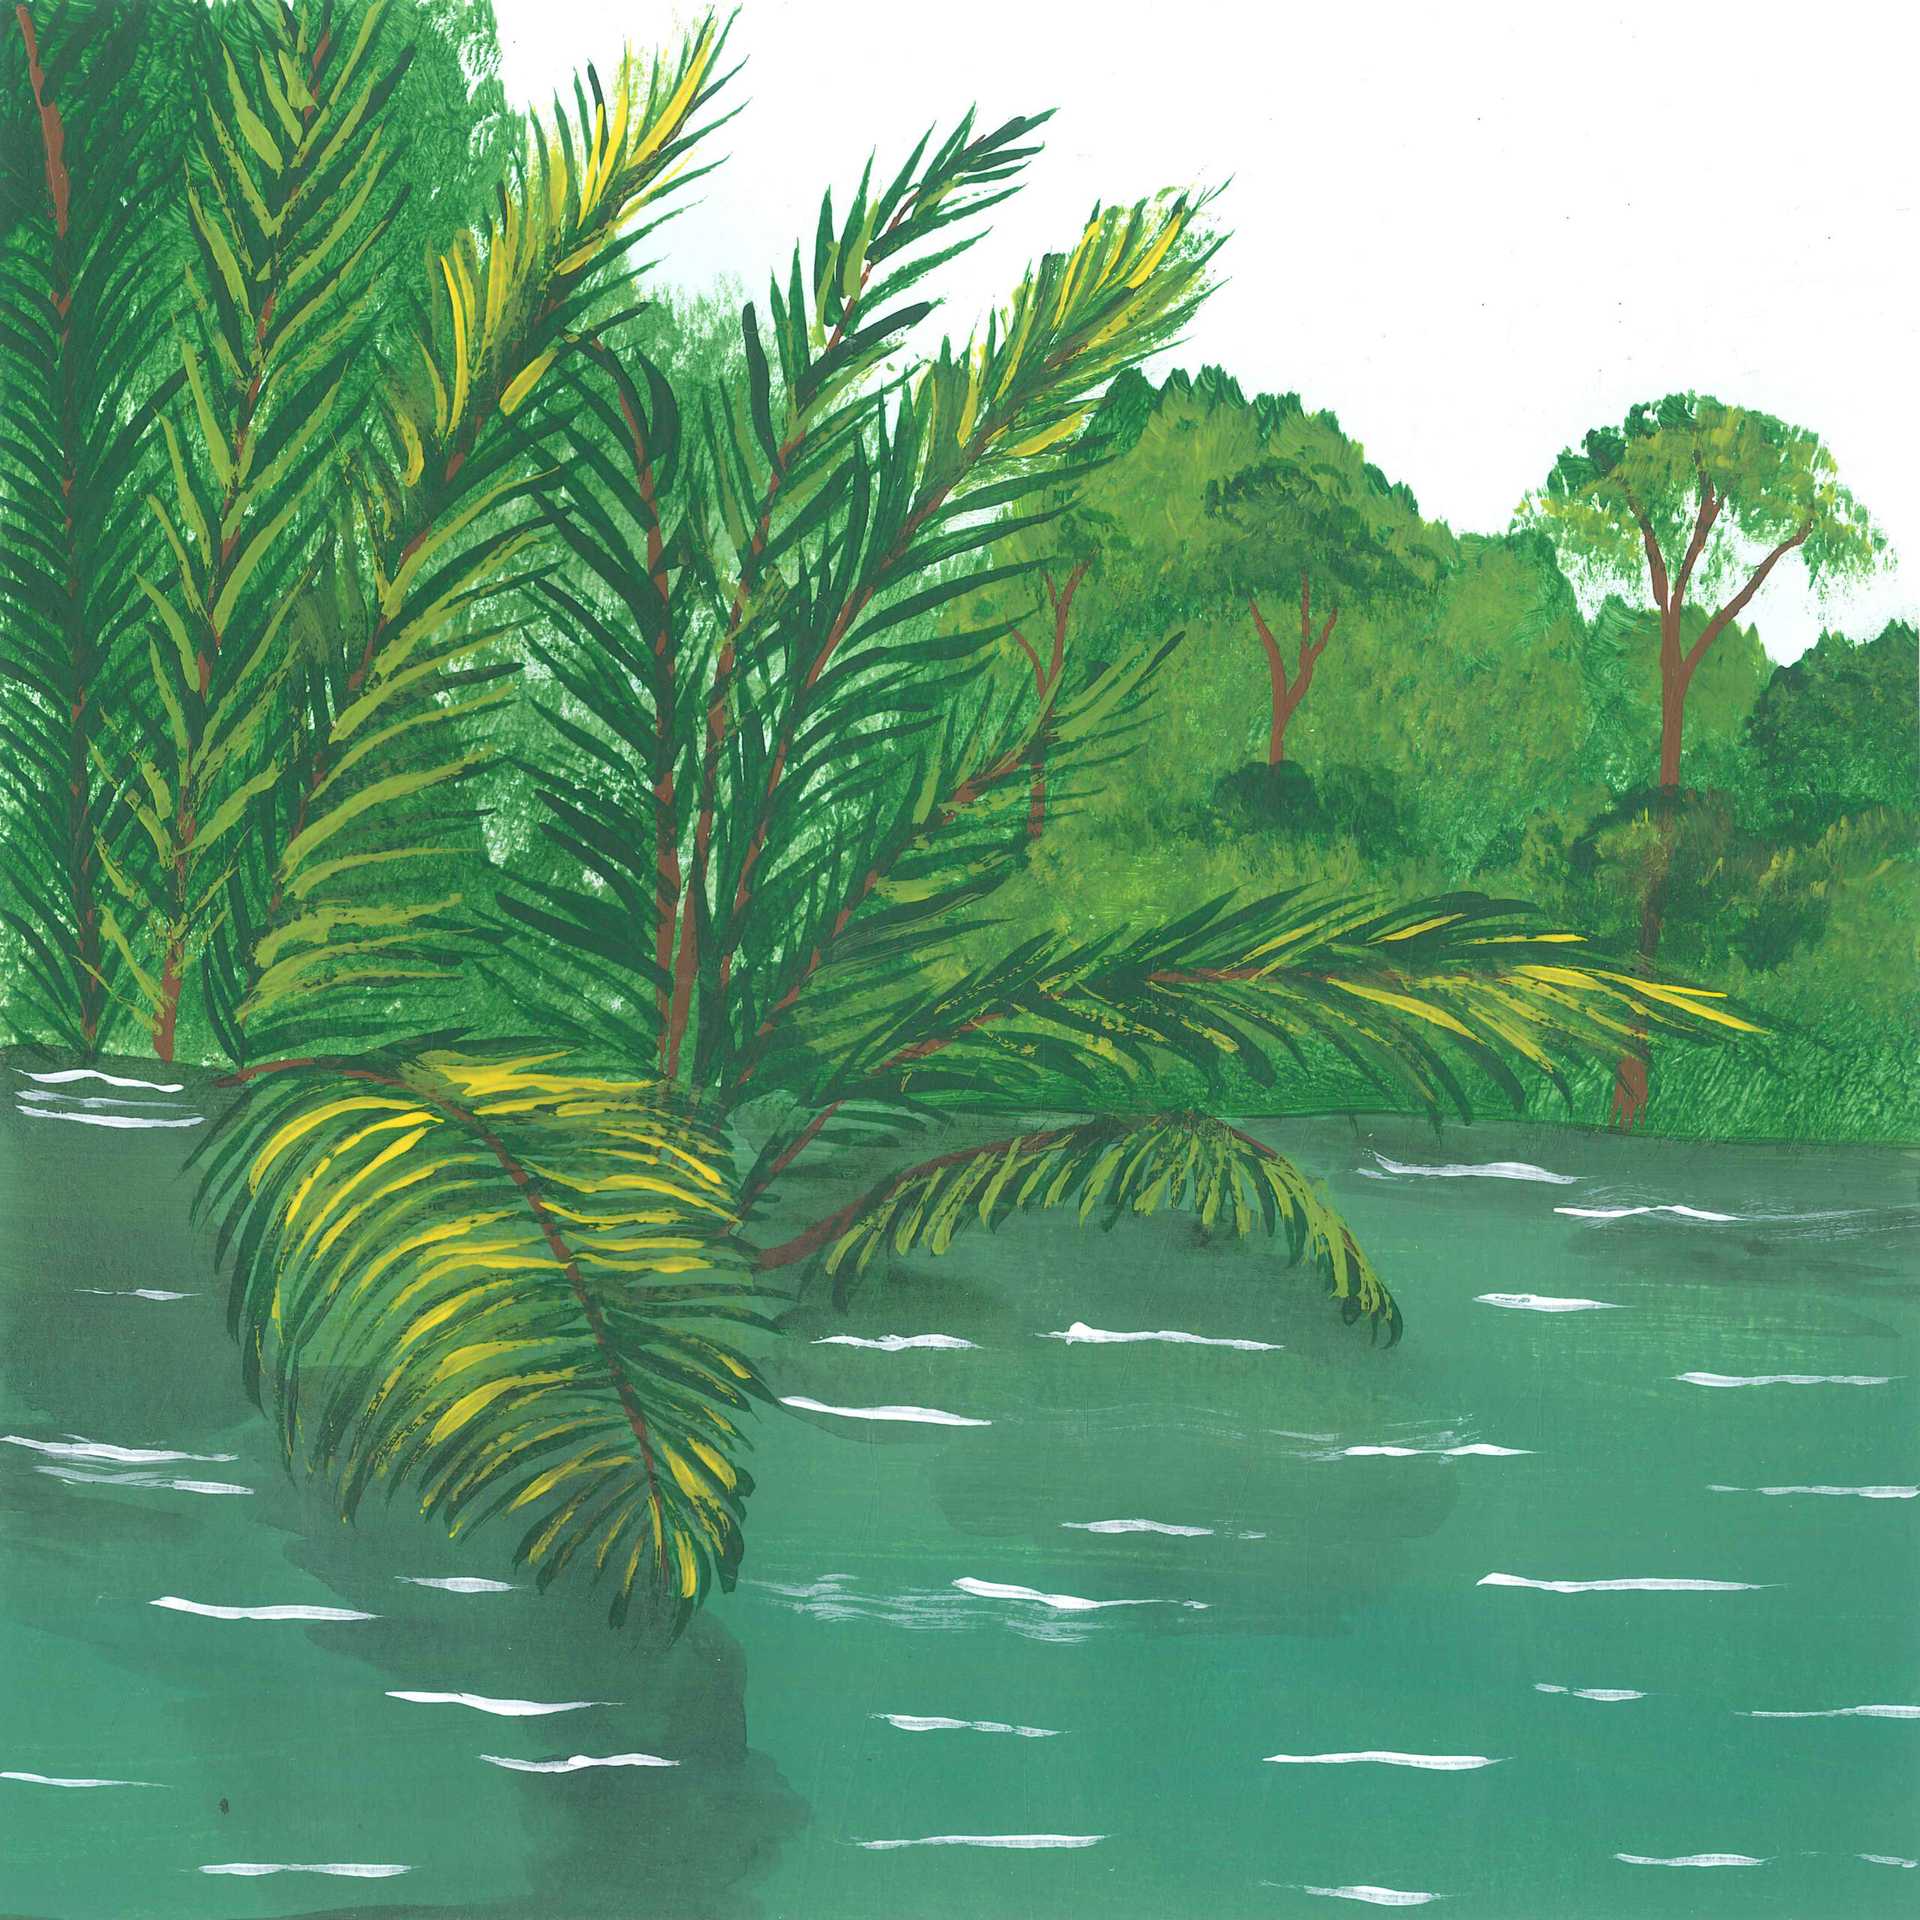 New Guinea – Lowland Rainforest Dawn - nature landscape painting - earth.fm